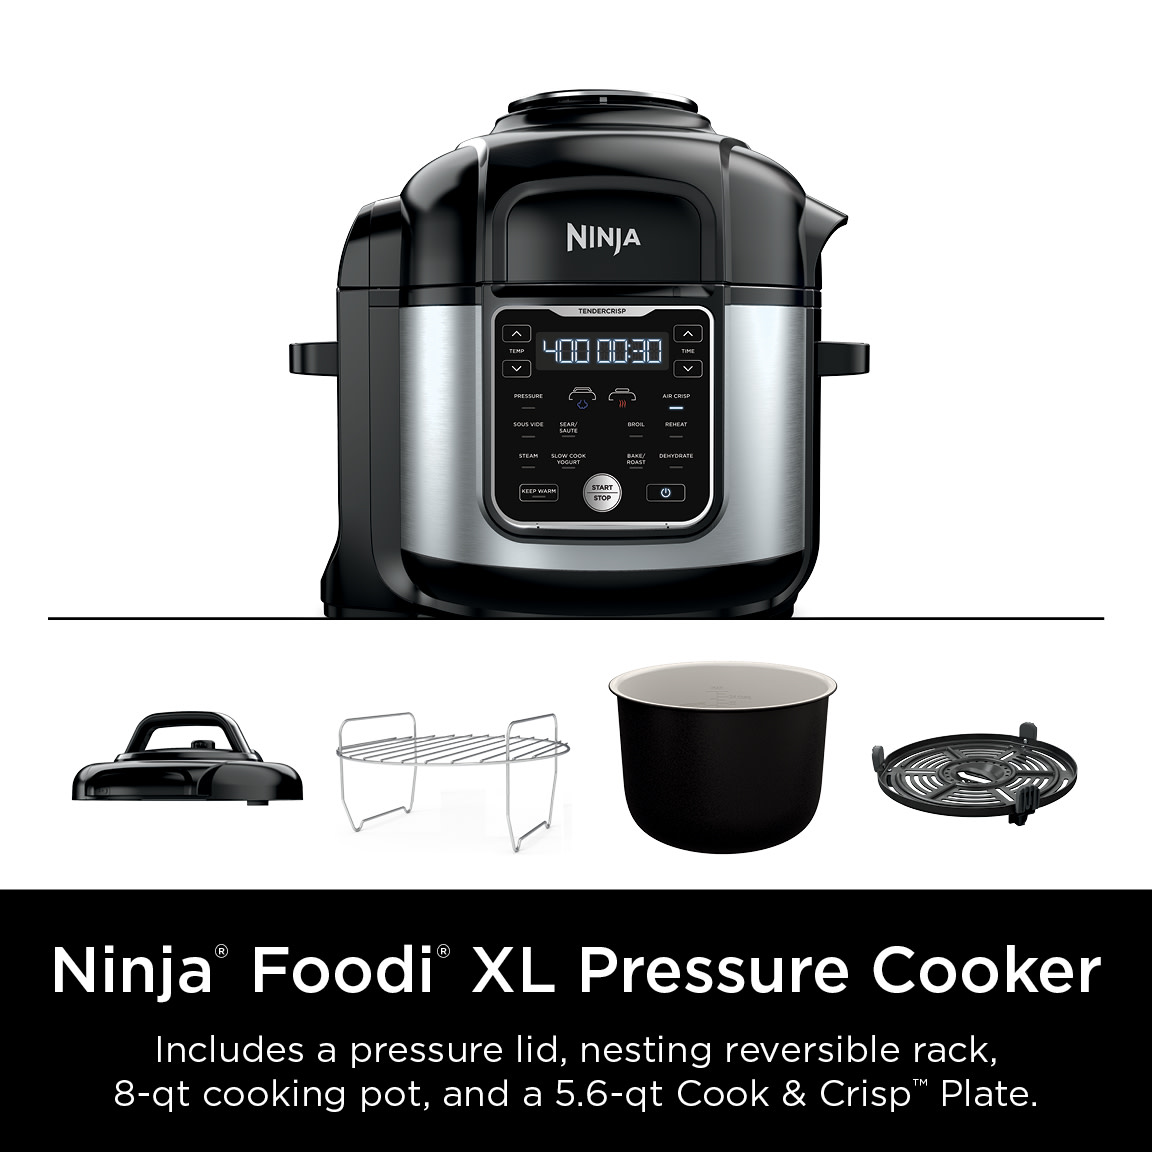 Ninja Foodi 10-in-1, 8 Quart XL Pressure Cooker Air Fryer Multicooker, OS401 - image 2 of 9